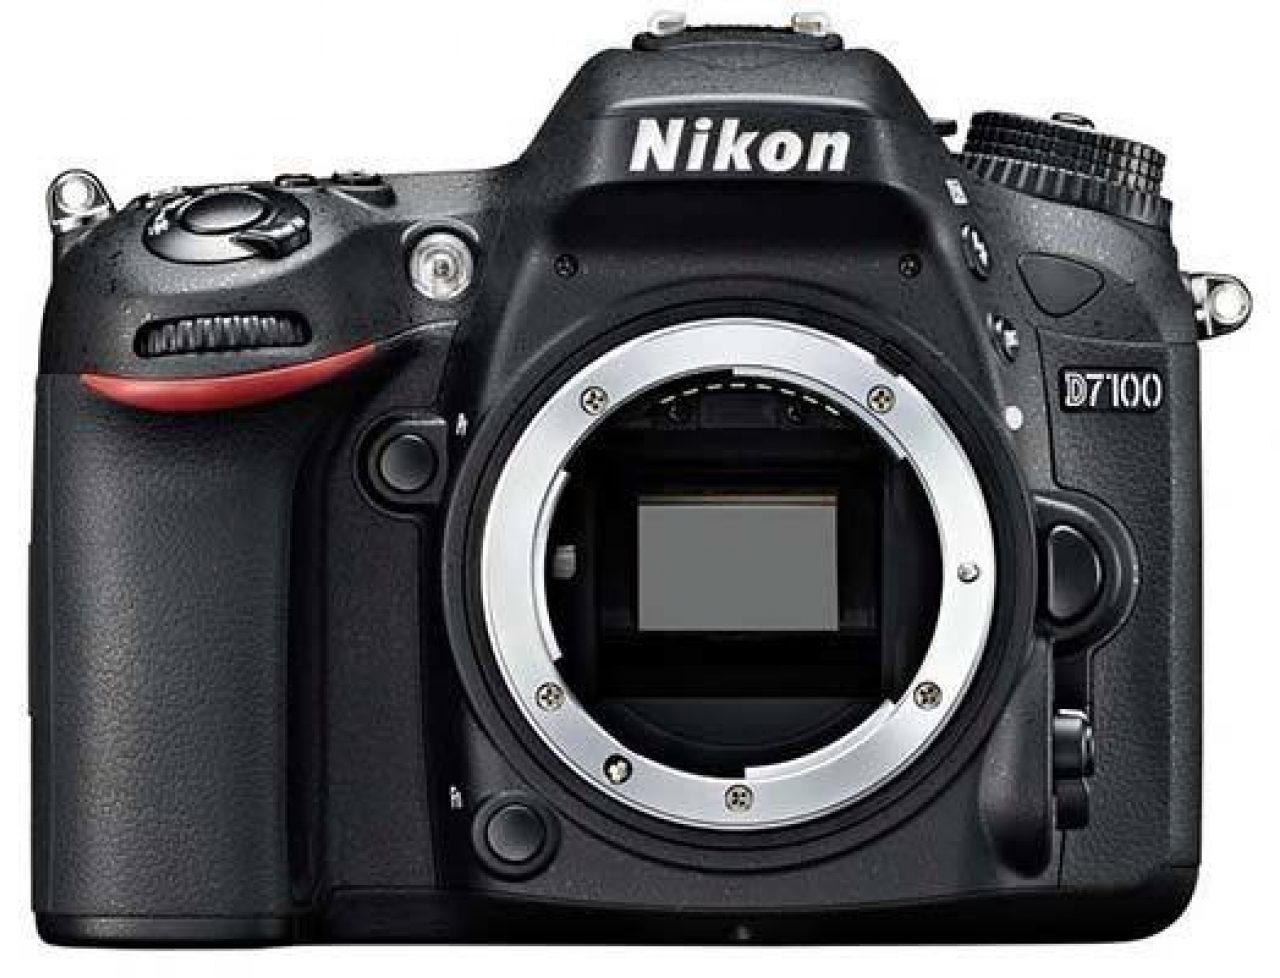 Nikon D7100 Review Photography Blog, Good Landscape Lens For Nikon D7000